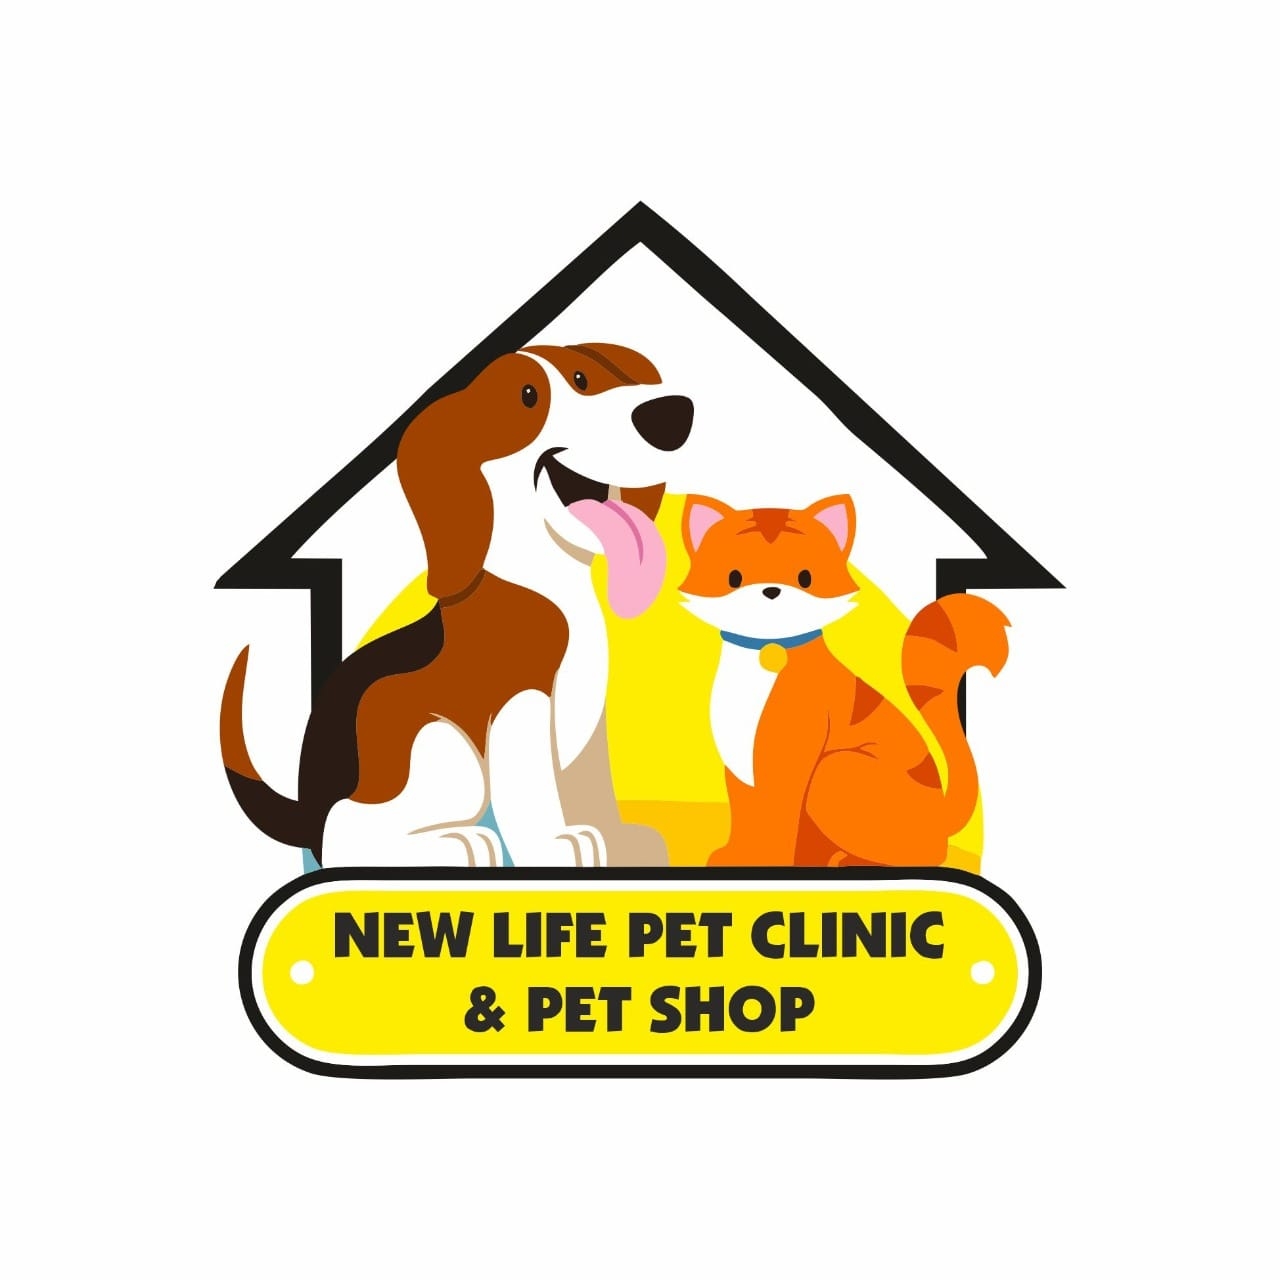 New life pet clinic & pet shop|Clinics|Medical Services